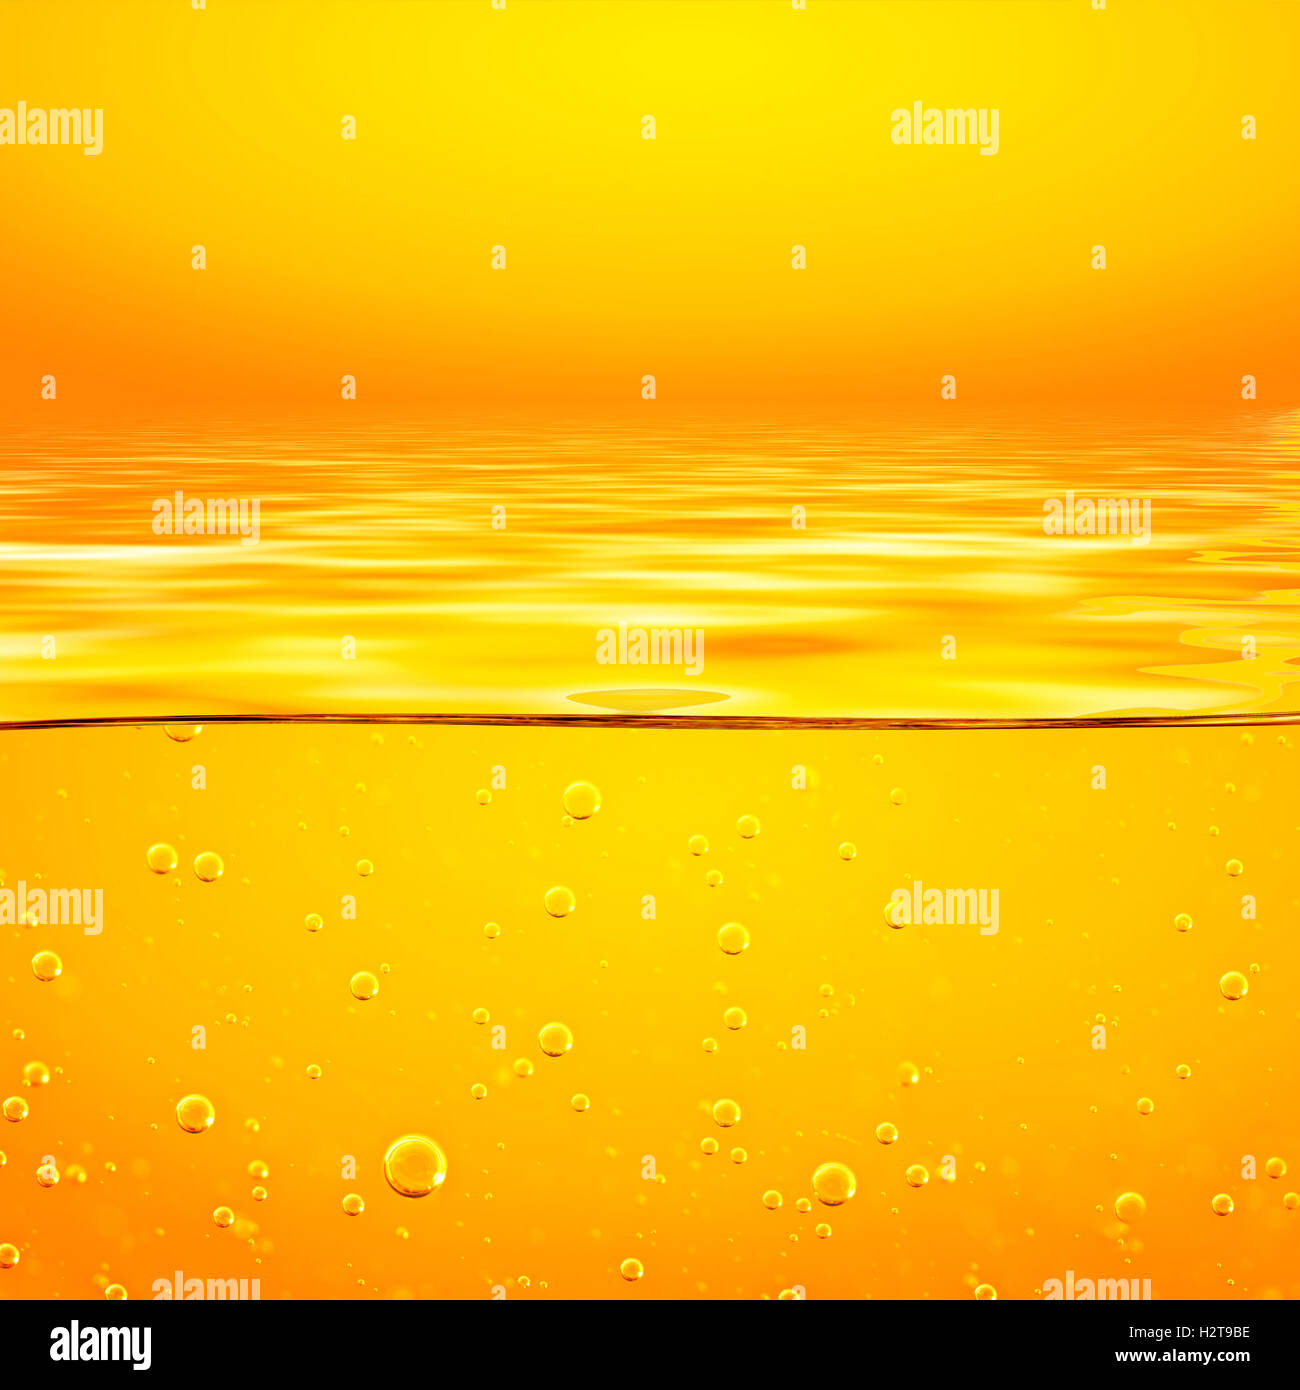 L'huile. Le miel. La bière. Des jus de fruits. Orange jaune liquide avec des bulles d'oxygène. Libre. Orange Jaune vagues et ciel. Banque D'Images